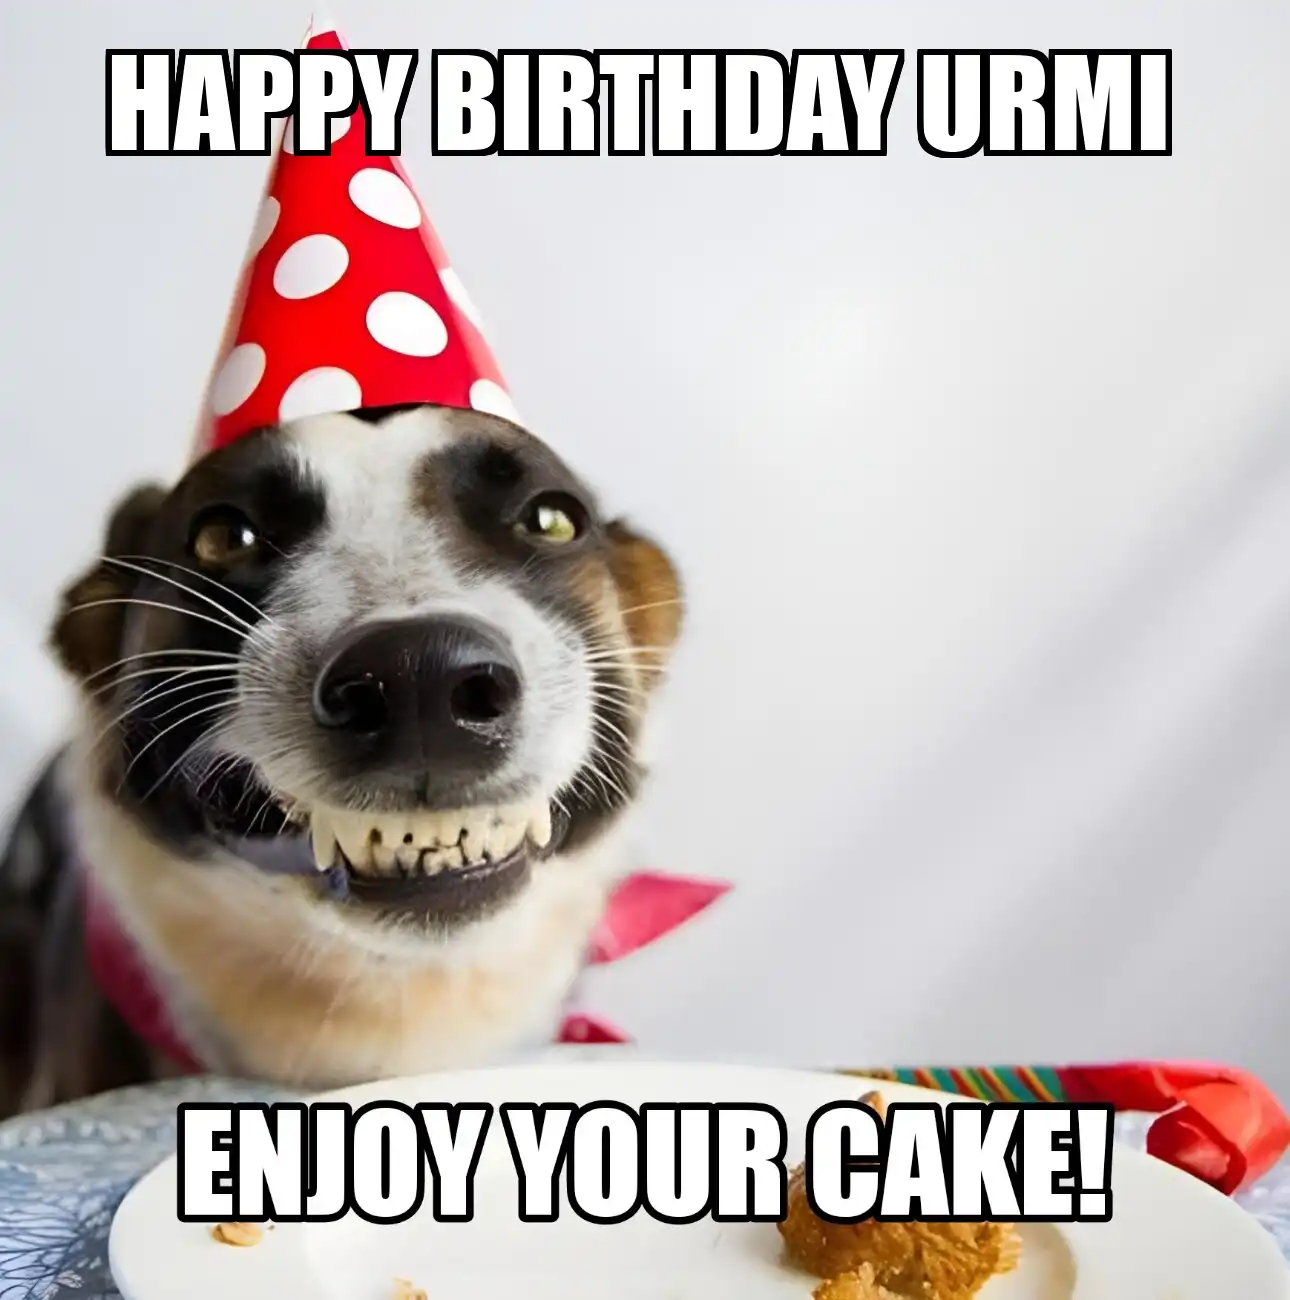 Happy Birthday Urmi Enjoy Your Cake Dog Meme